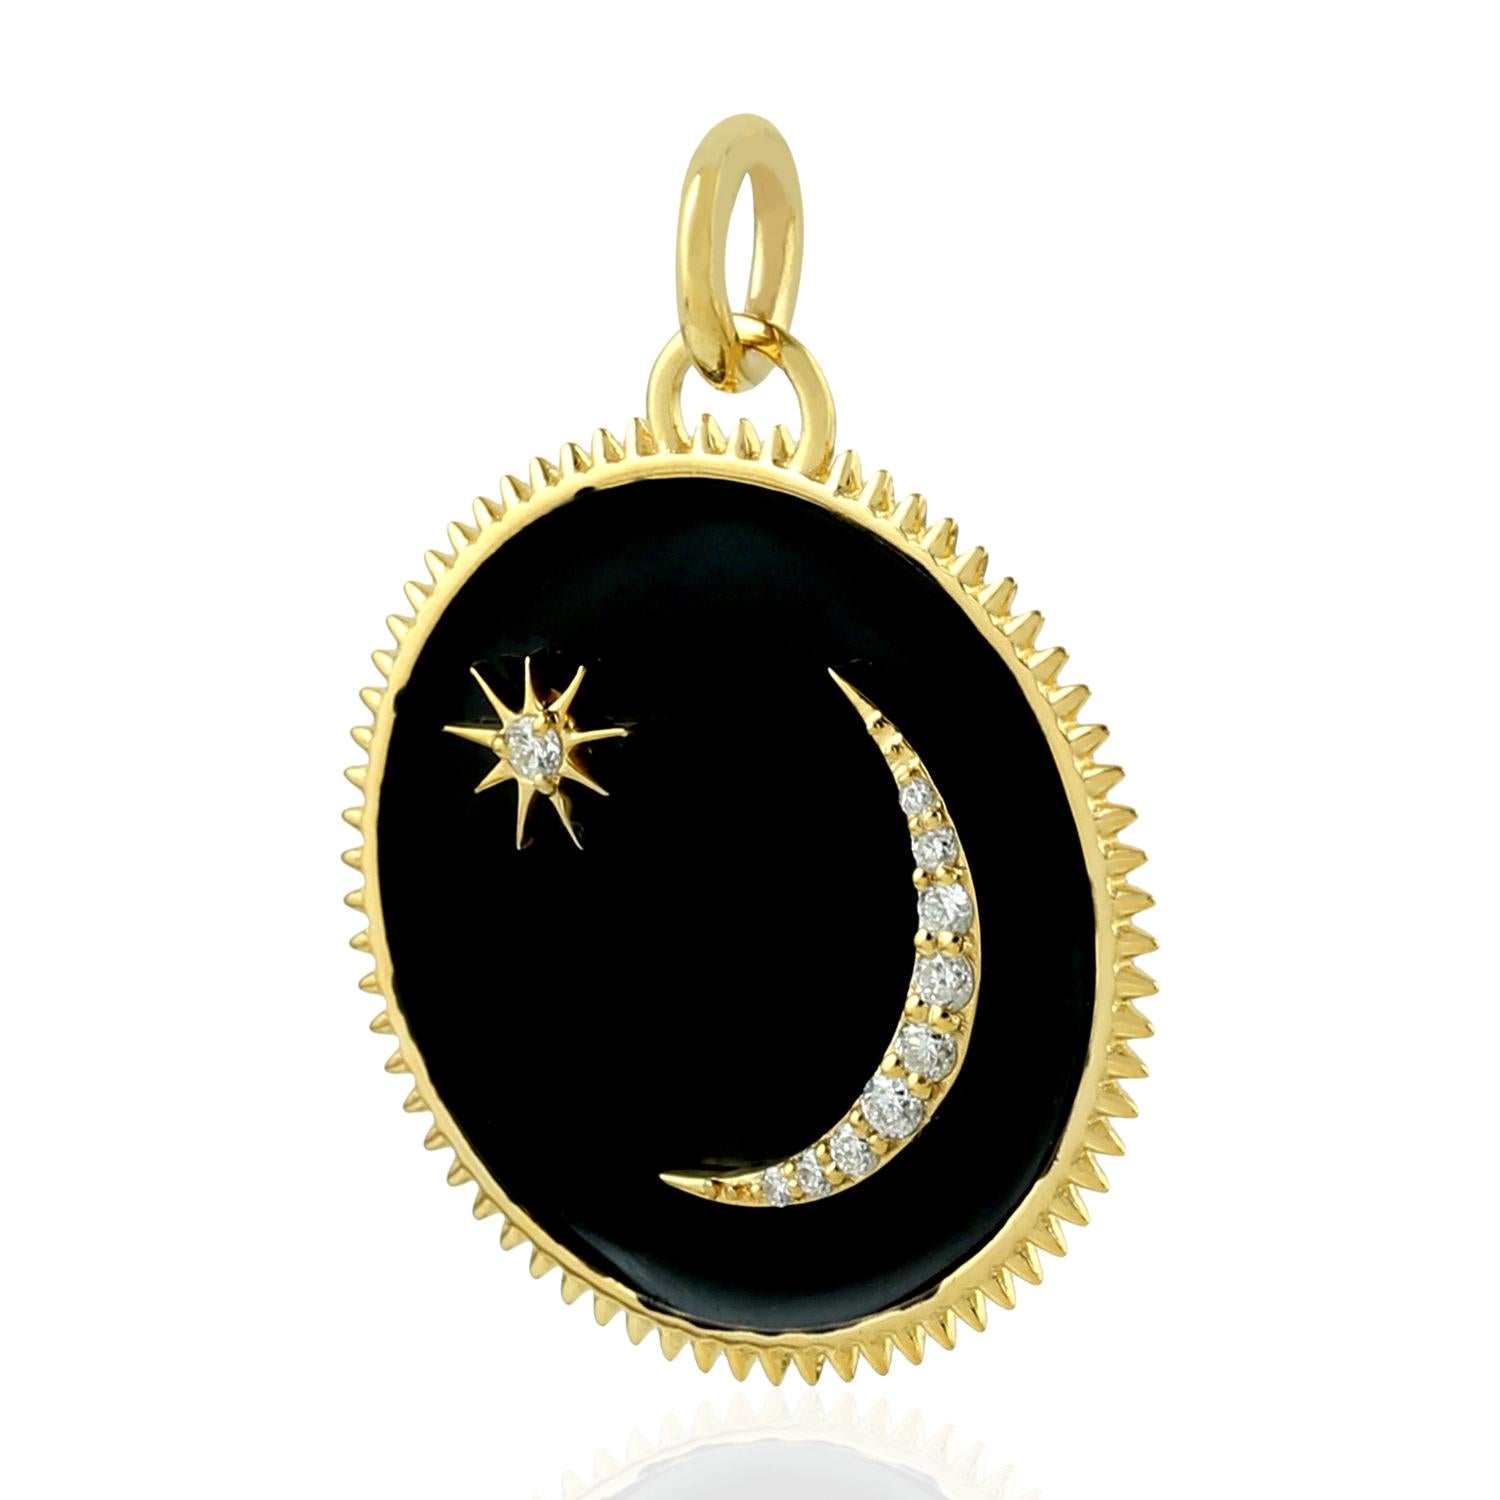 Le médaillon du pendentif en or 14 carats est serti d'émail noir et de diamants étincelants de 0,11 carat.  Ce médaillon représente le fait d'apprendre chaque jour et de grandir pour devenir un meilleur individu.  La lune signifie la paix et la